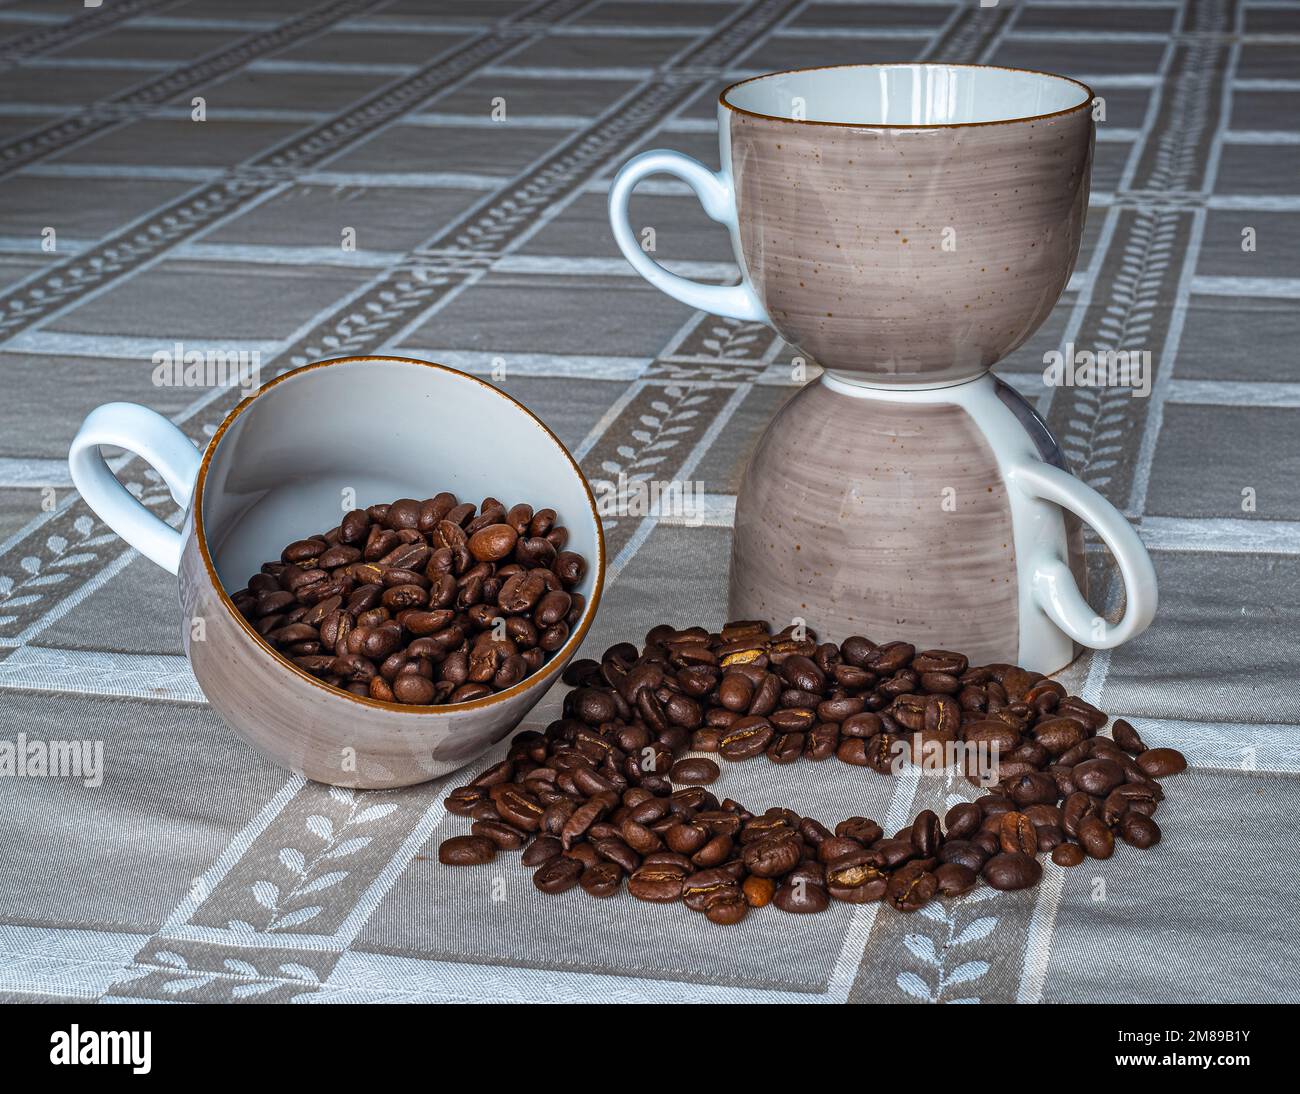 Lubiana Polnisches Porzellan, Kaffeetasse. Sehr leichte und zarte Kaffeetasse auf dem Tisch gefüllt mit aromatischem arabischem Kaffee. Kann in der Werbung verwendet werden. Stockfoto